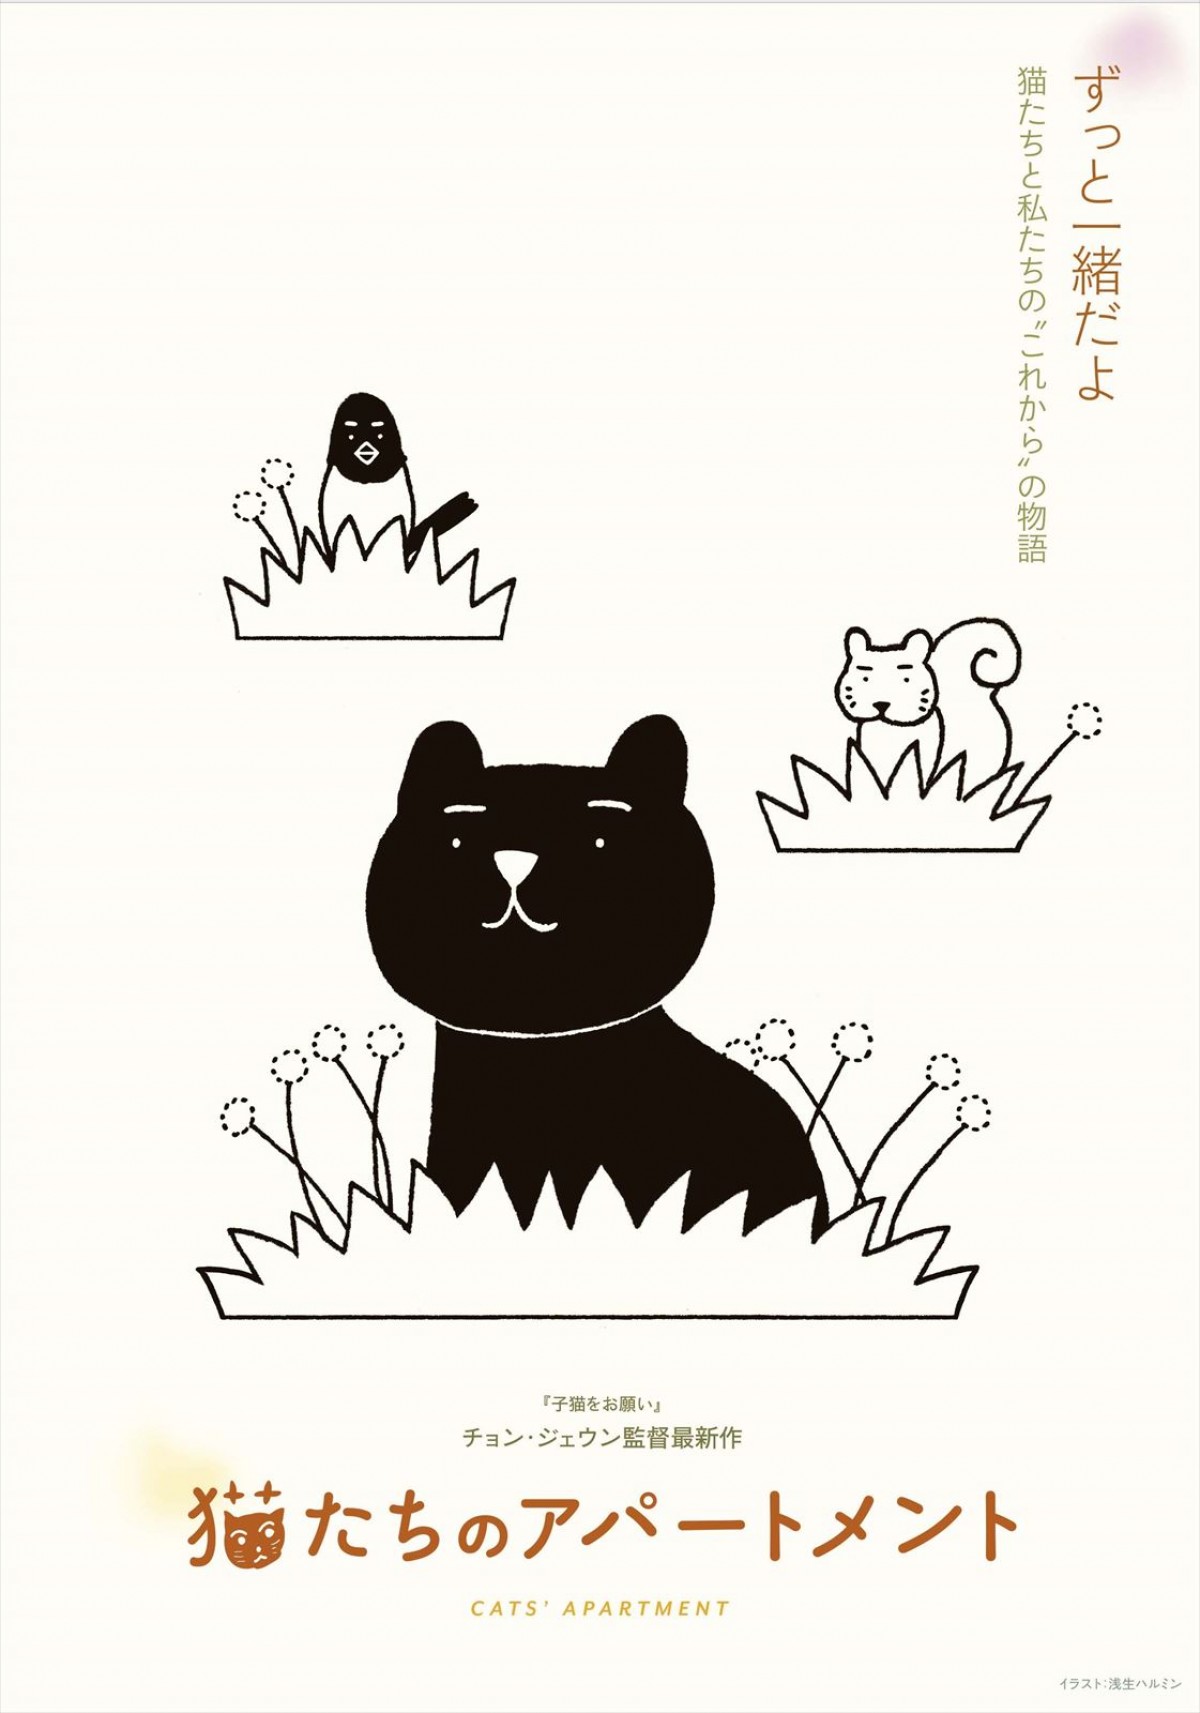 ノラ猫250匹のお引越し大作戦『猫たちのアパートメント』、角田光代、坂本美雨ら著名人コメント到着